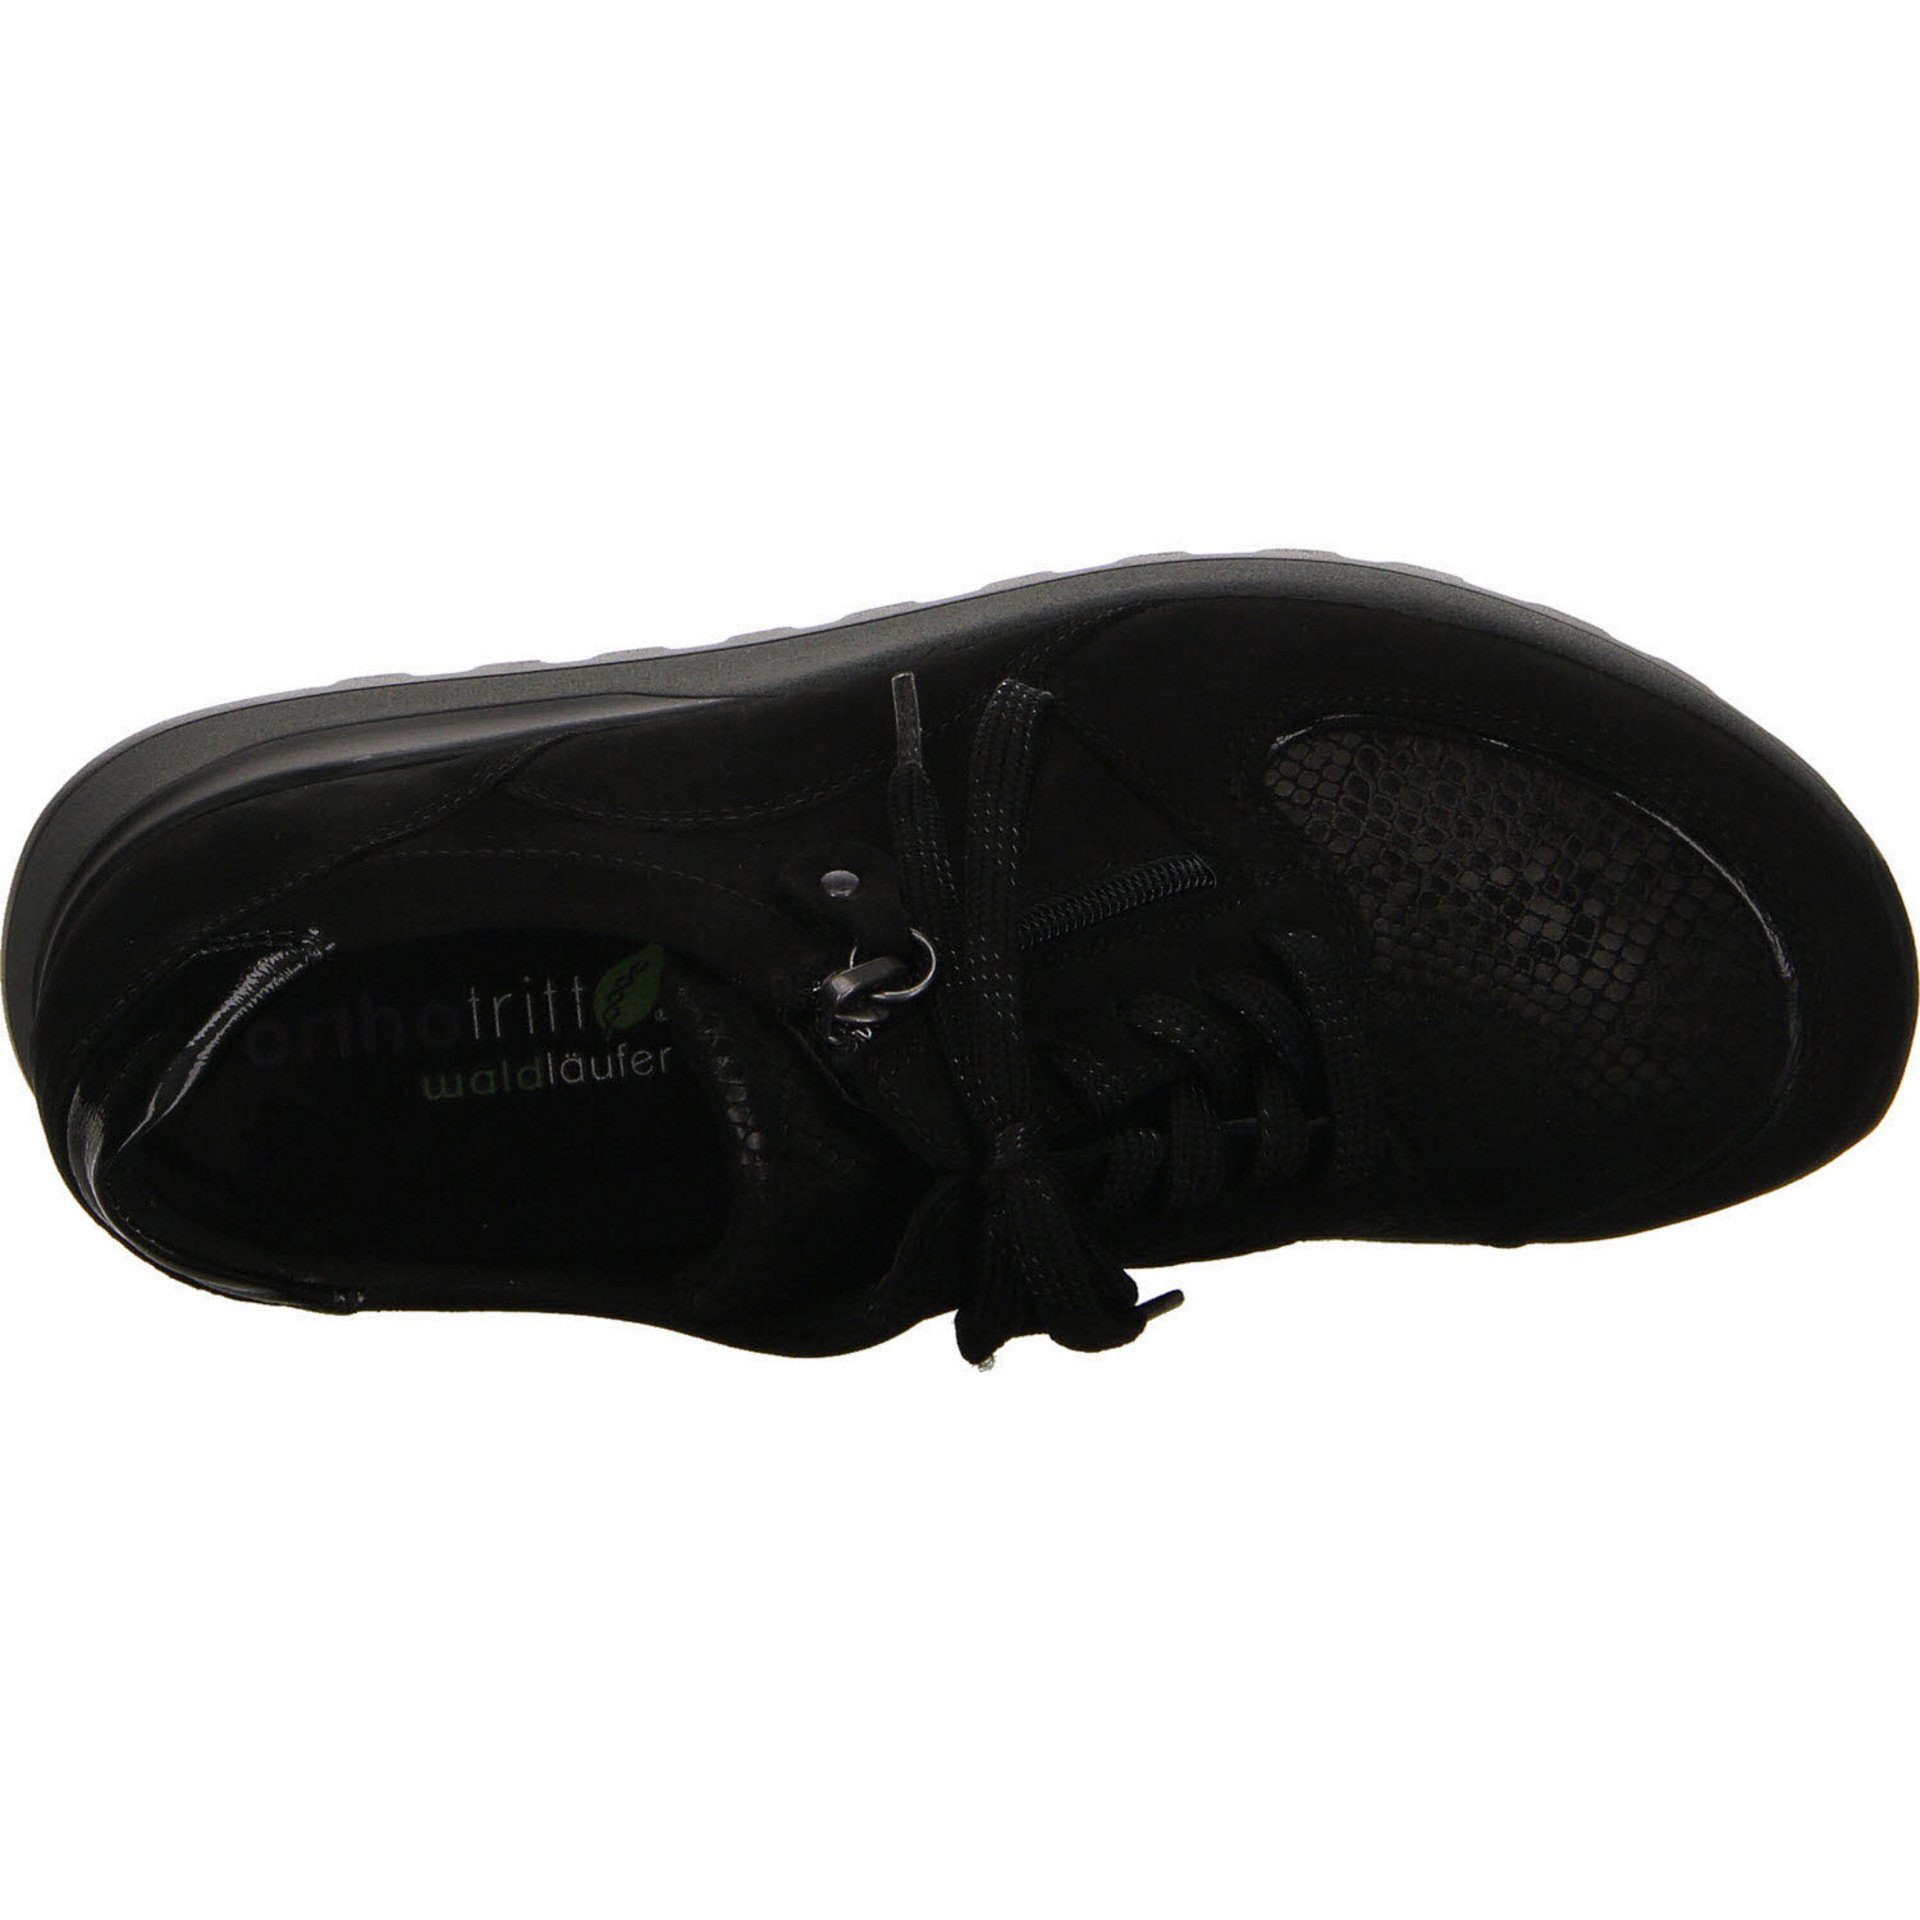 Waldläufer Schnürhalbschuhe schwarz Schnürschuh Lederkombination Damen Sneaker Hiroko-Soft